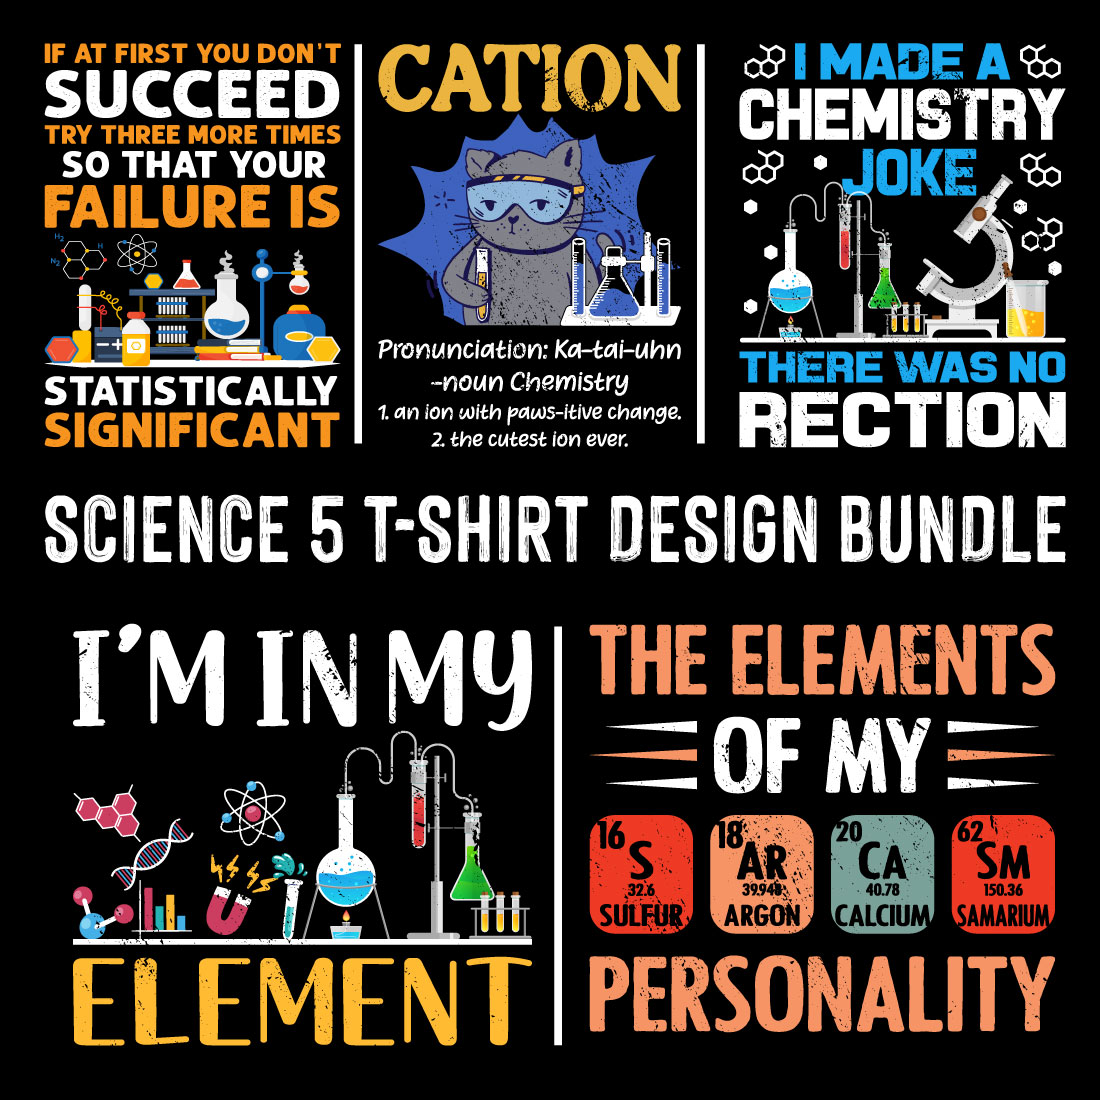 Science 5 t shirt design bundle preview image.